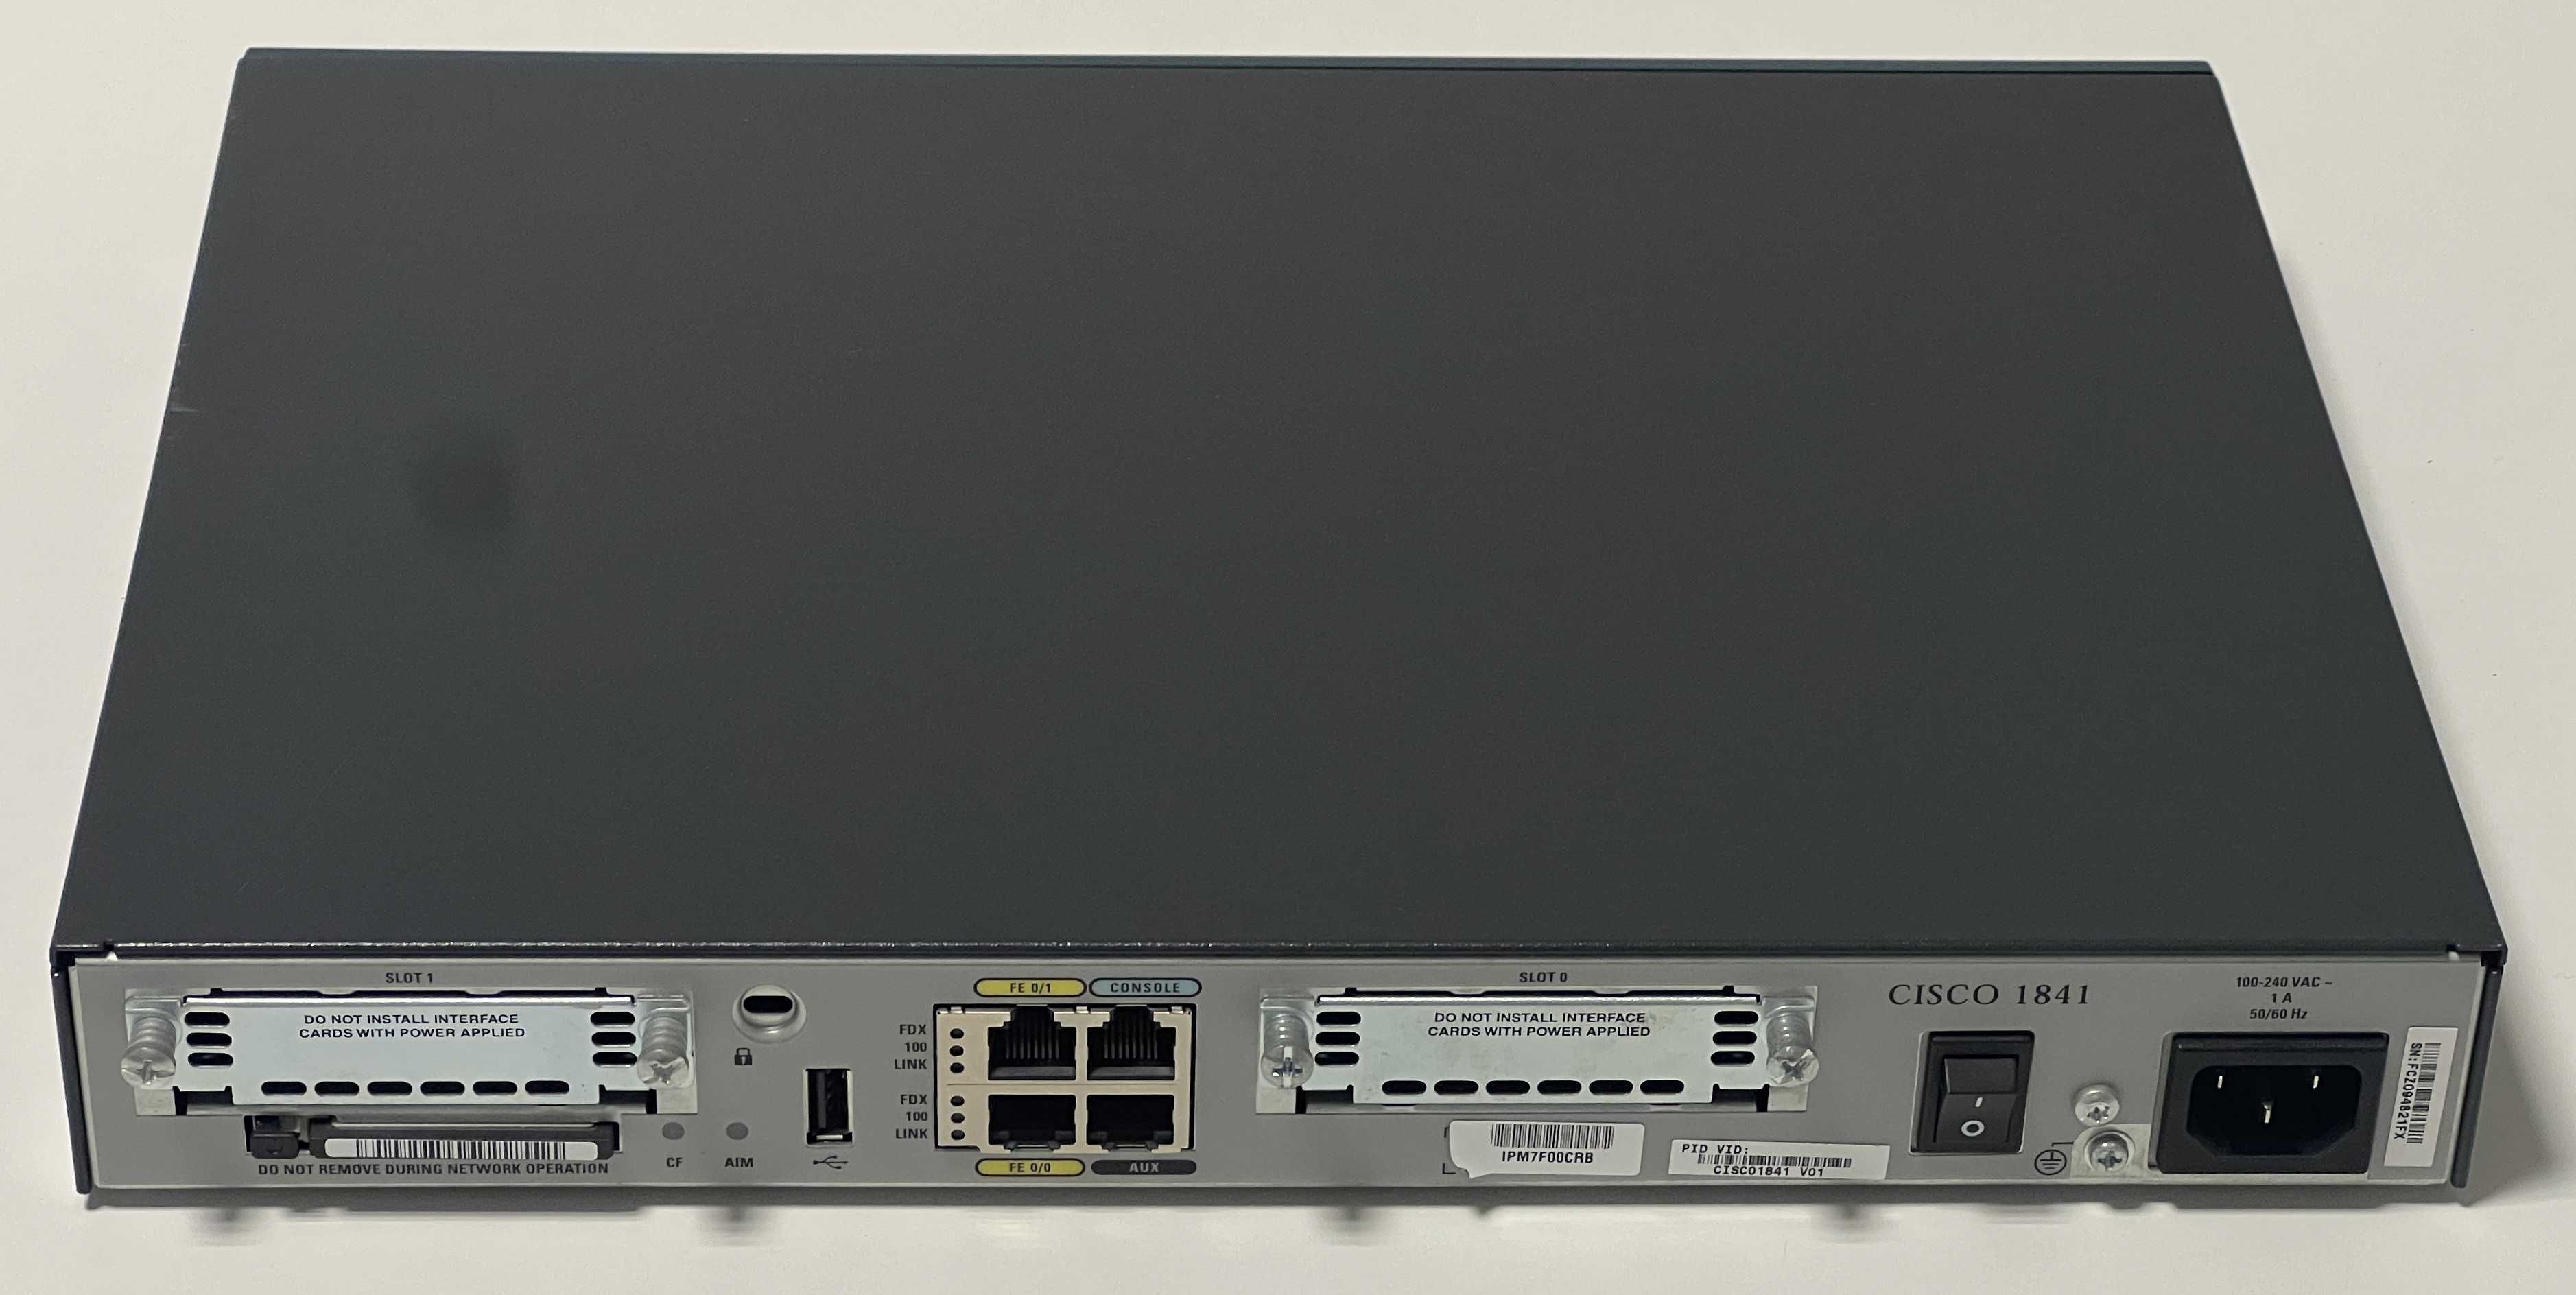 Router Modular Cisco 1841 - Series 1800 - Usado